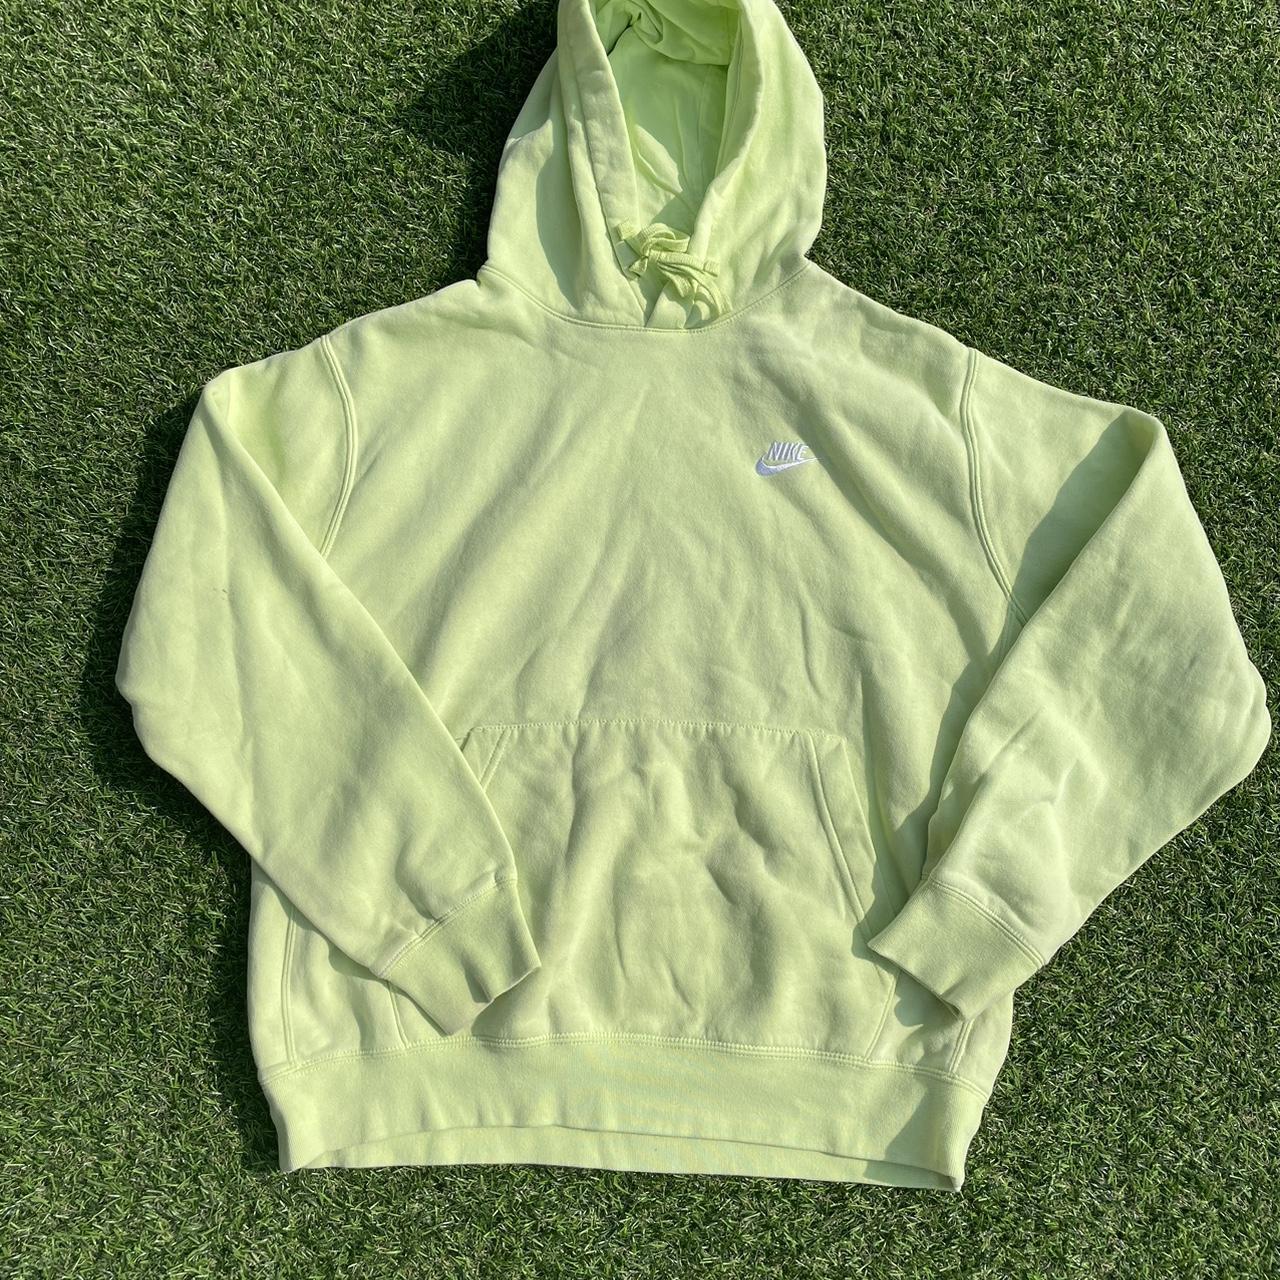 Glow green Nike hoodie - Depop